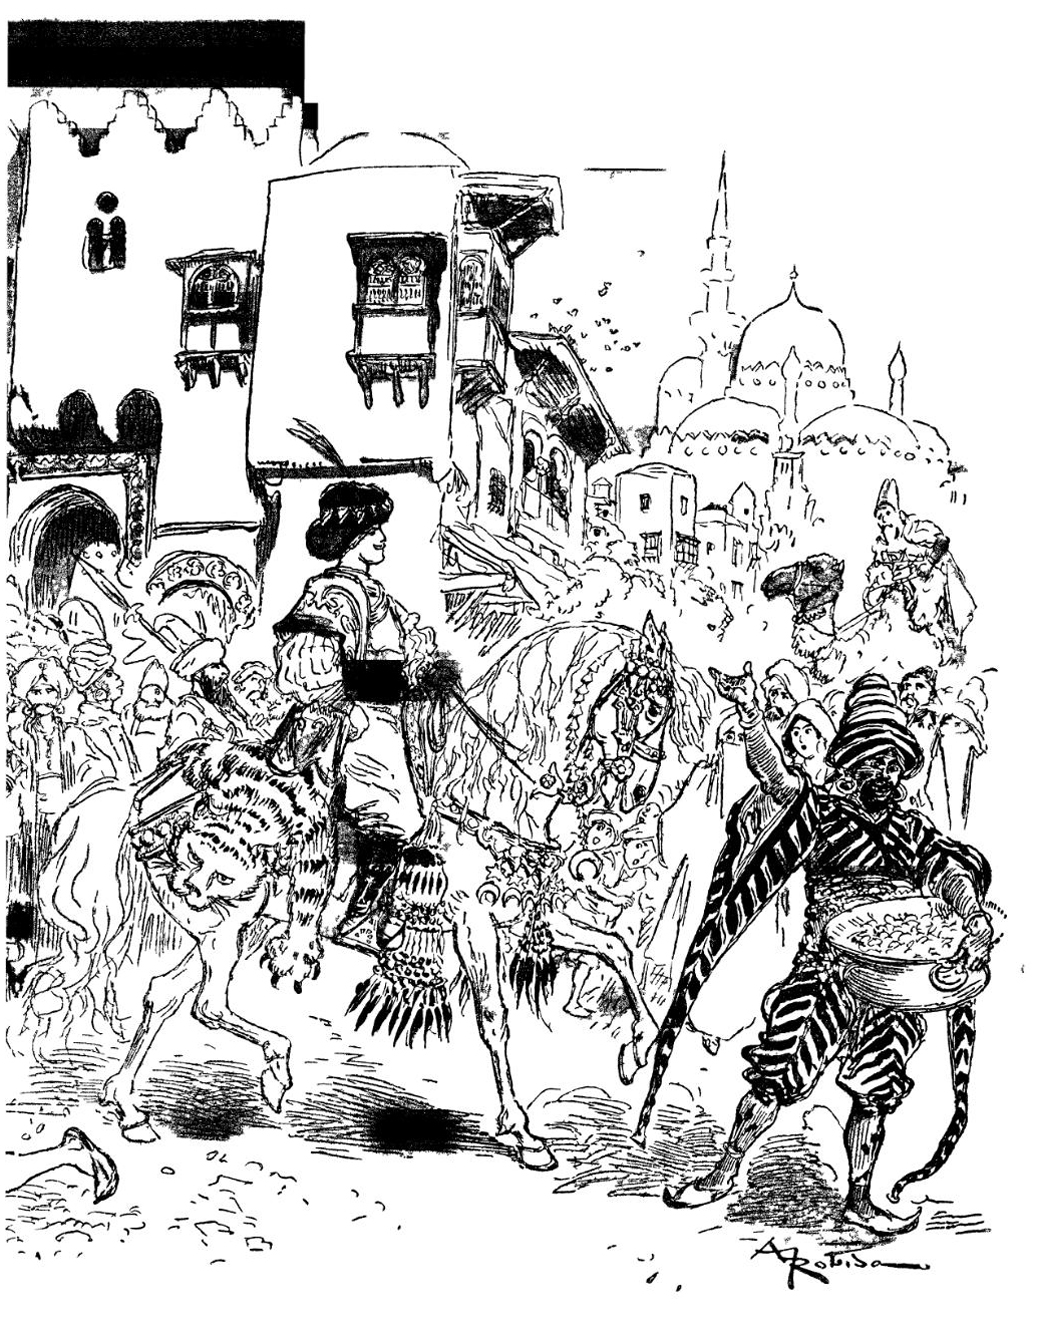 L'arrivo del principe Aladin nella città di Agrabah